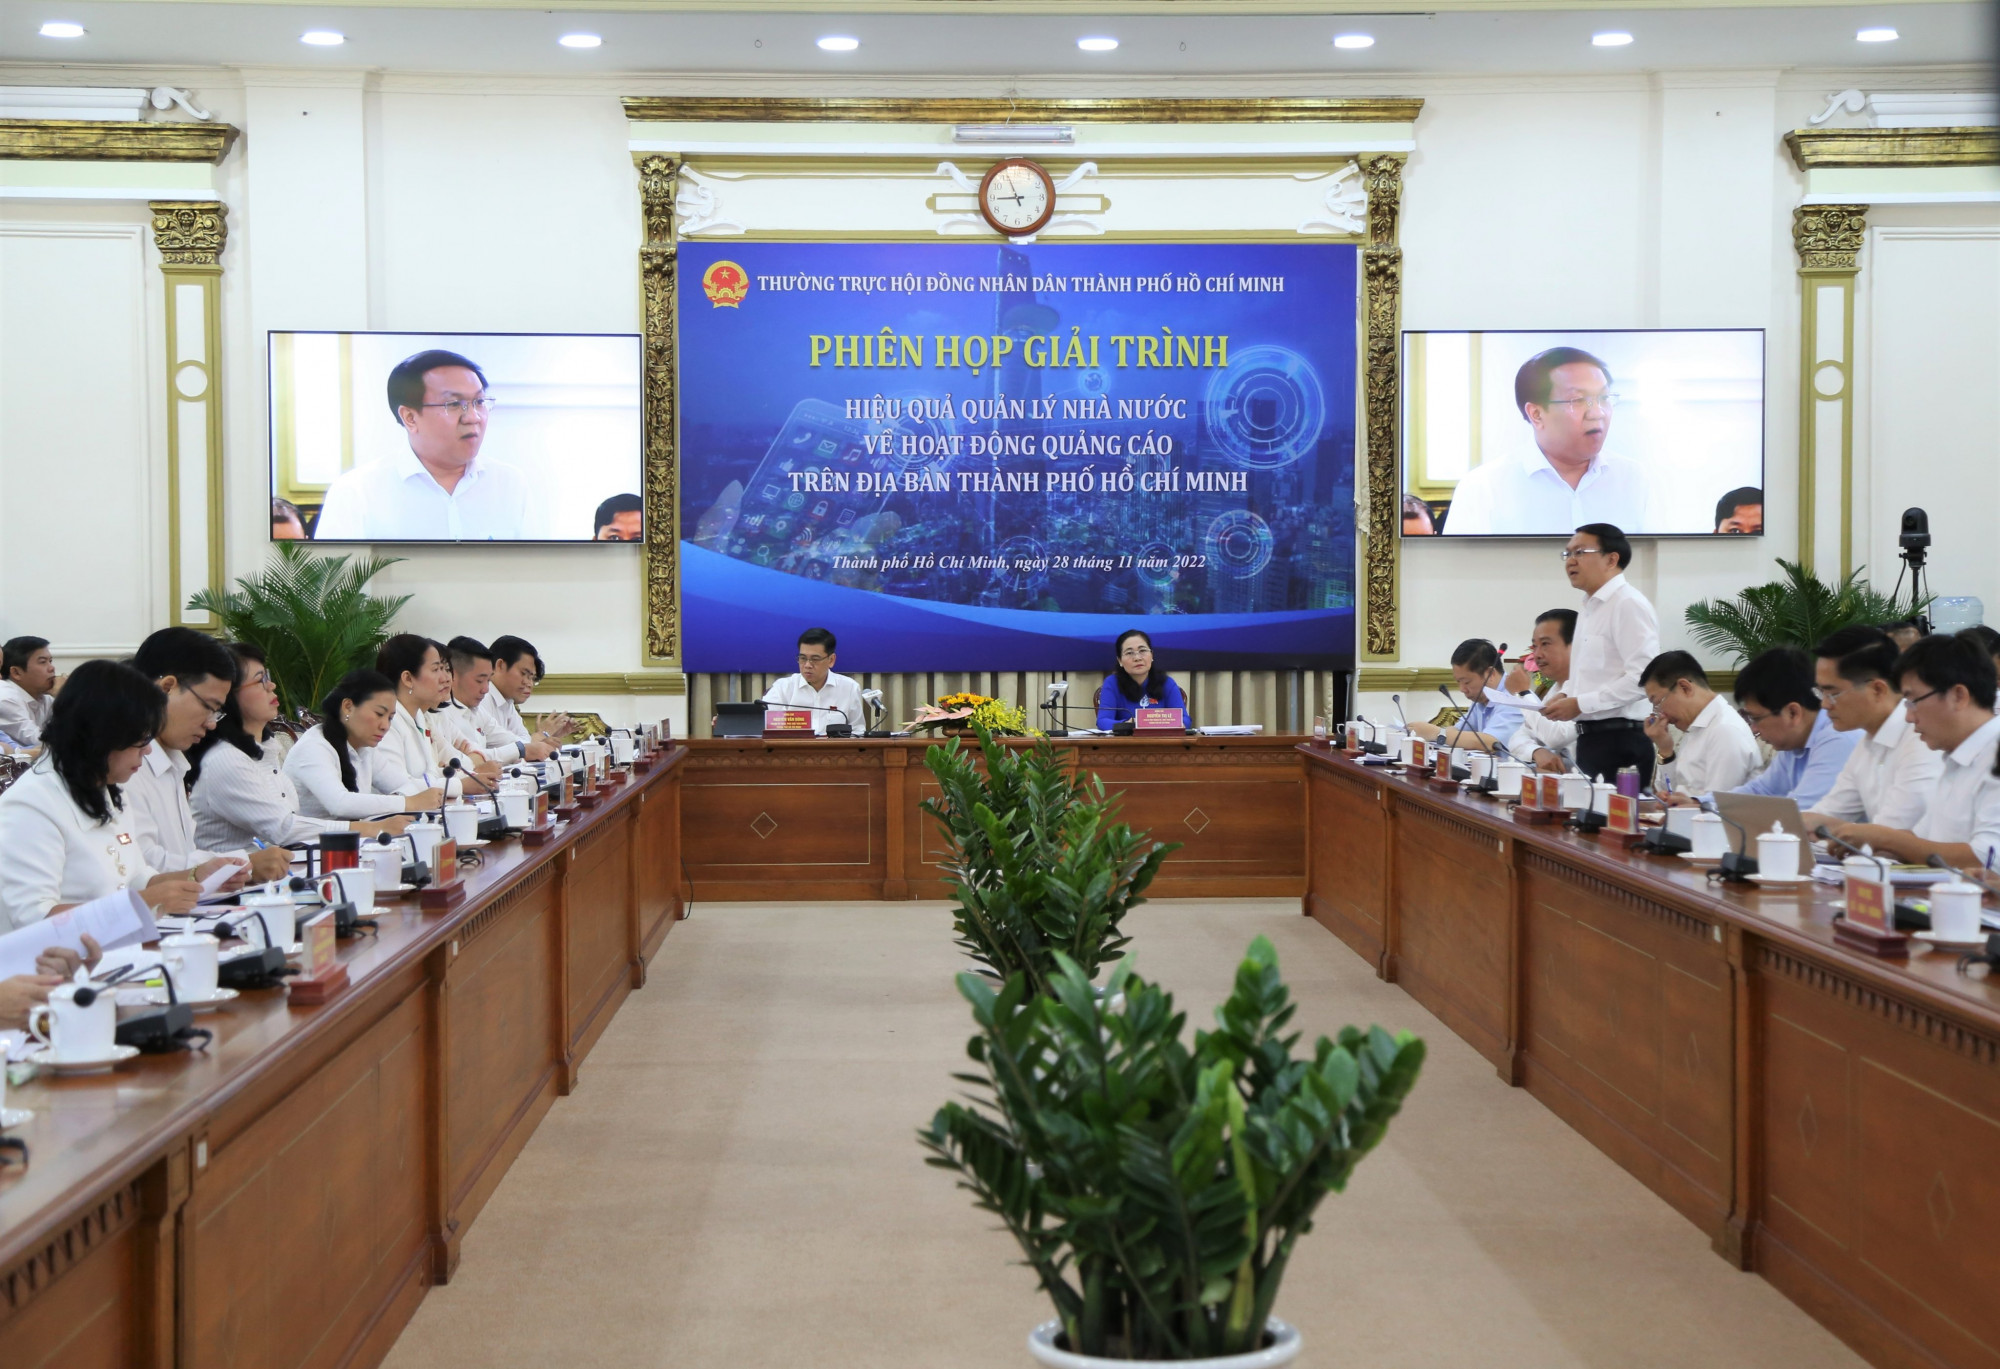 Phiên họp giải trình về hiệu quả quản lý Nhà nước trong hoạt động quảng cáo trên địa bàn TPHCM ngày 28/11. Ảnh: Quốc Ngọc